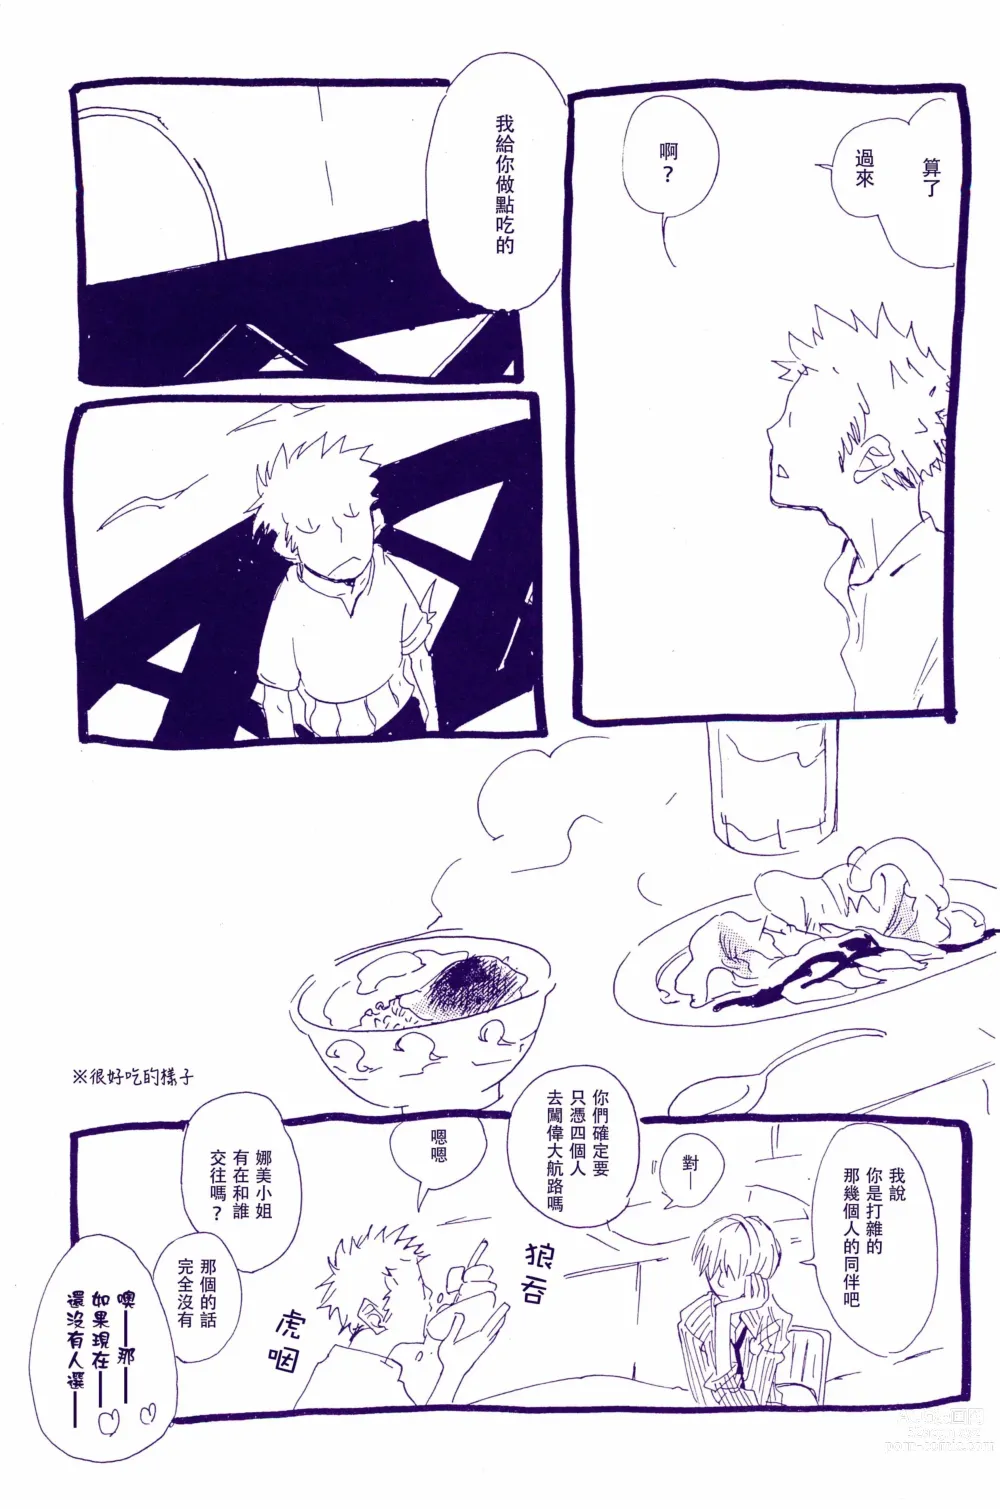 Page 4 of doujinshi 在暴风雨的夜晚 1